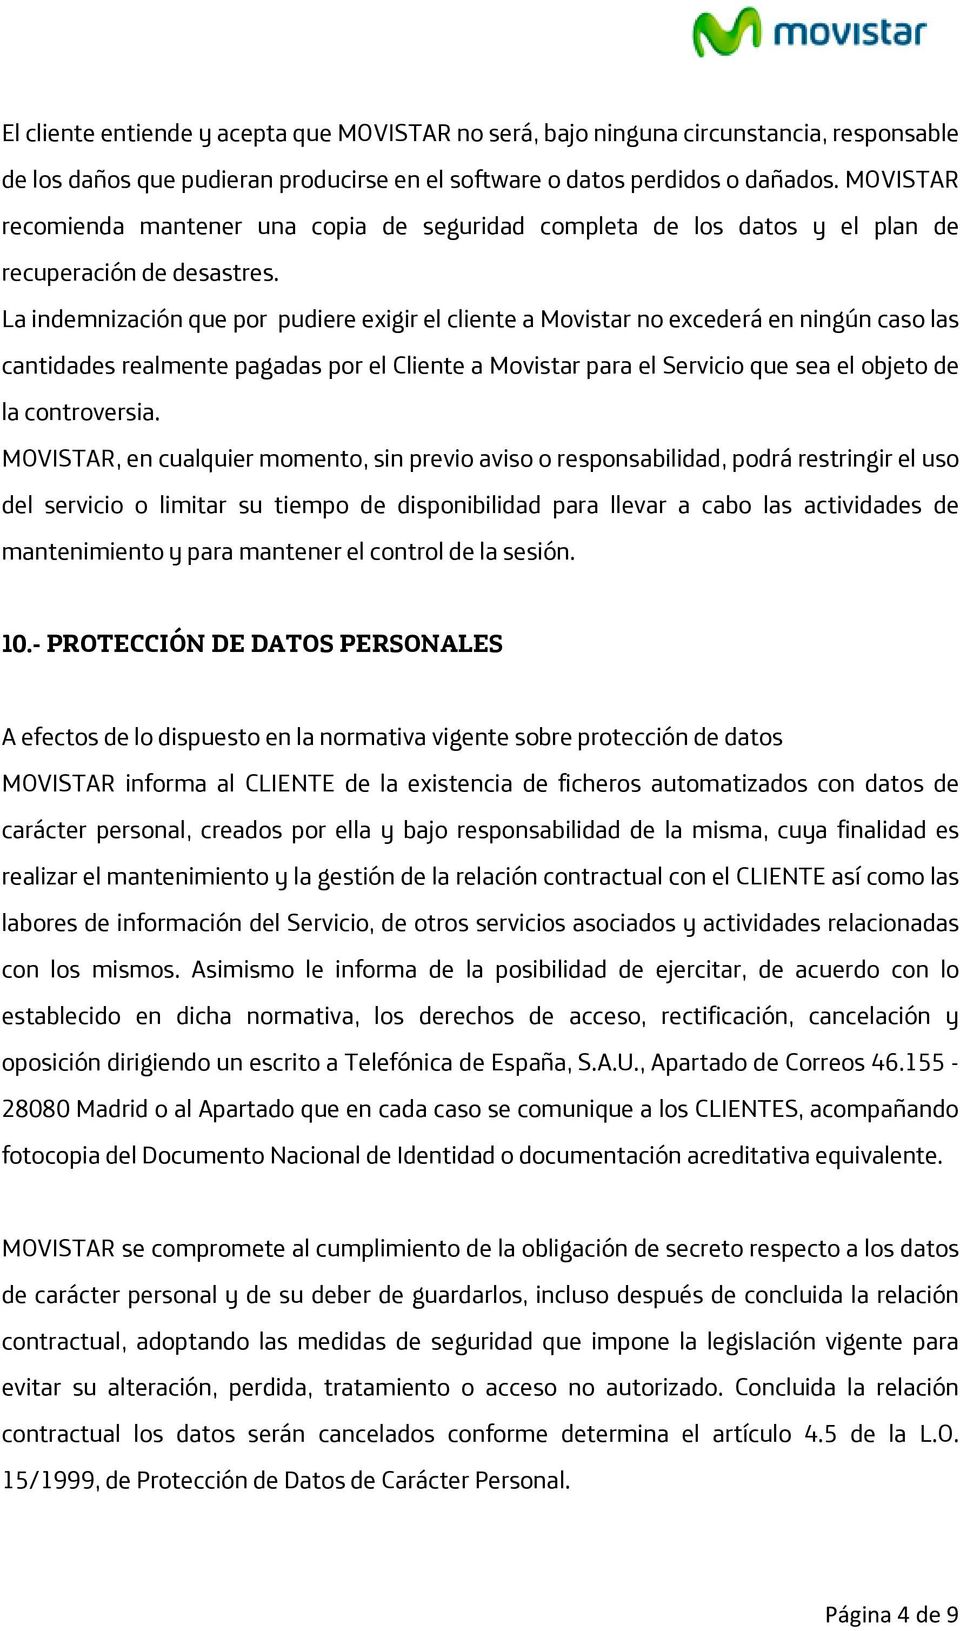 La indemnización que por pudiere exigir el cliente a Movistar no excederá en ningún caso las cantidades realmente pagadas por el Cliente a Movistar para el Servicio que sea el objeto de la